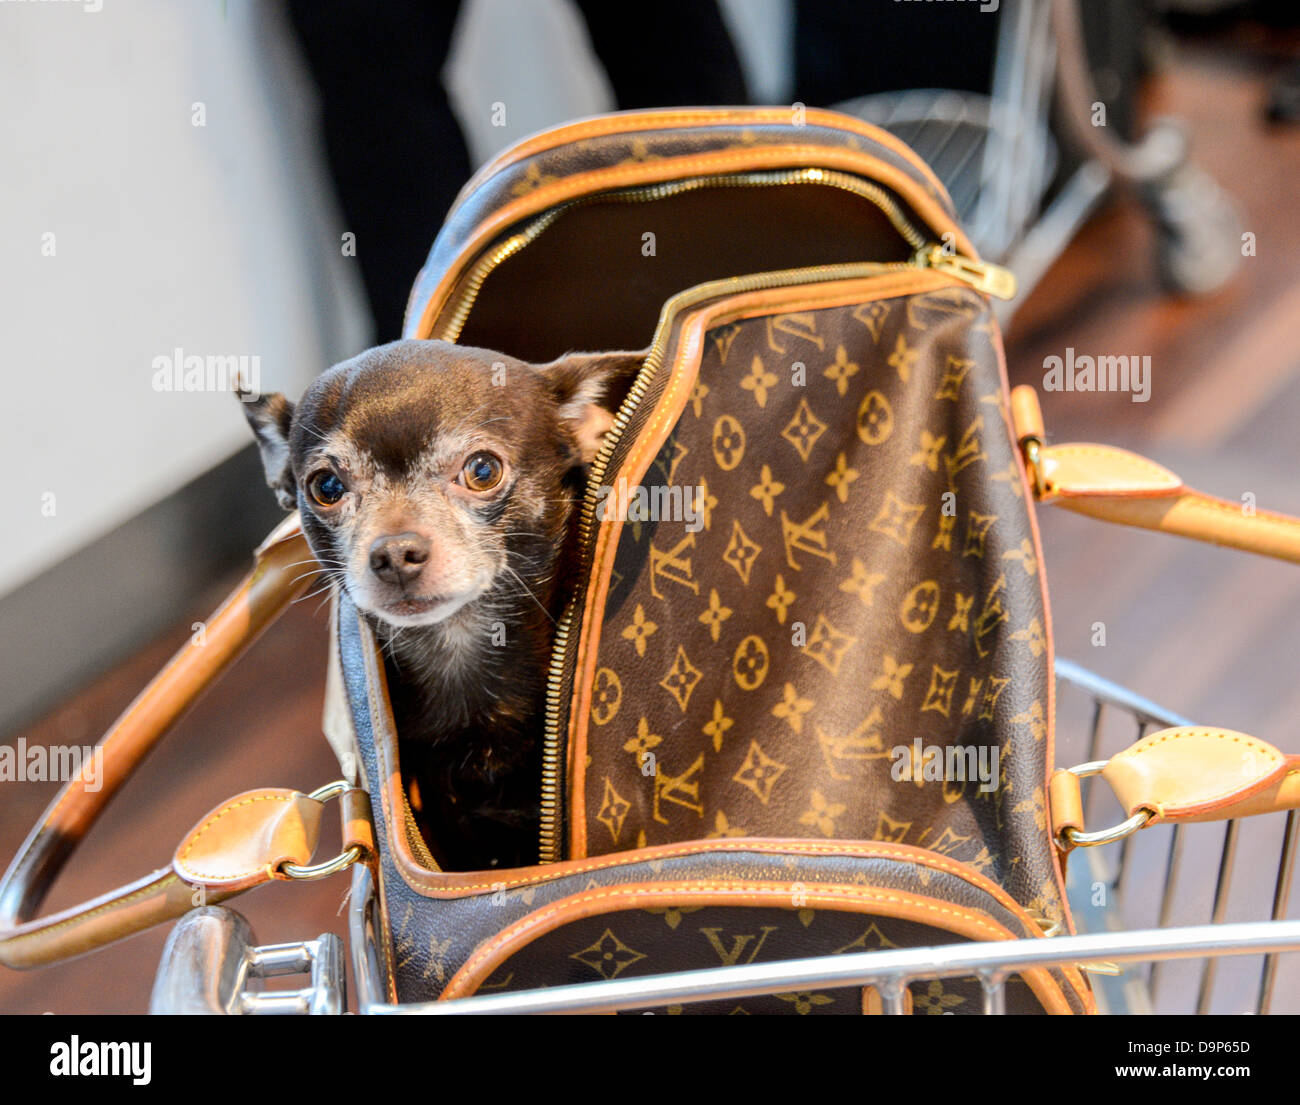 ▷🥇 Sac de transport pour petit chien de luxe - Chihuahua